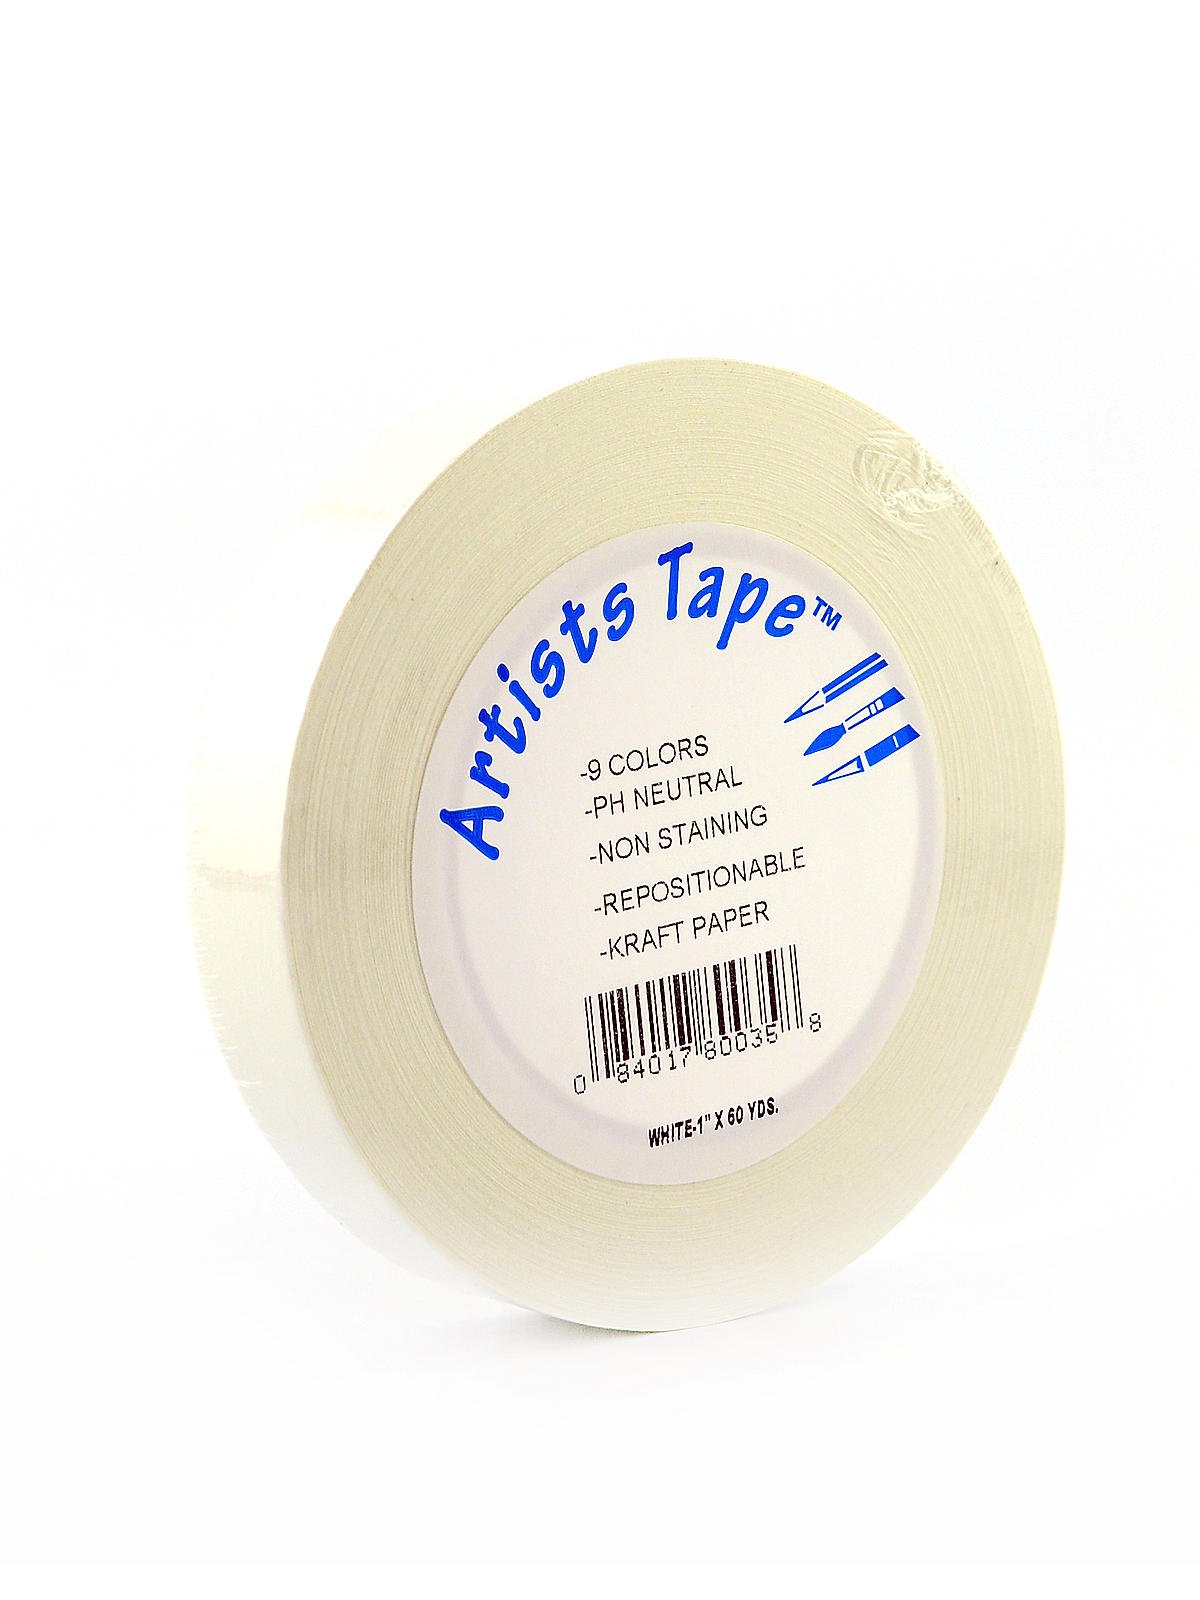 Pro-Tape Drafting Tape  Drafting tapes, Tape, Discount art supplies